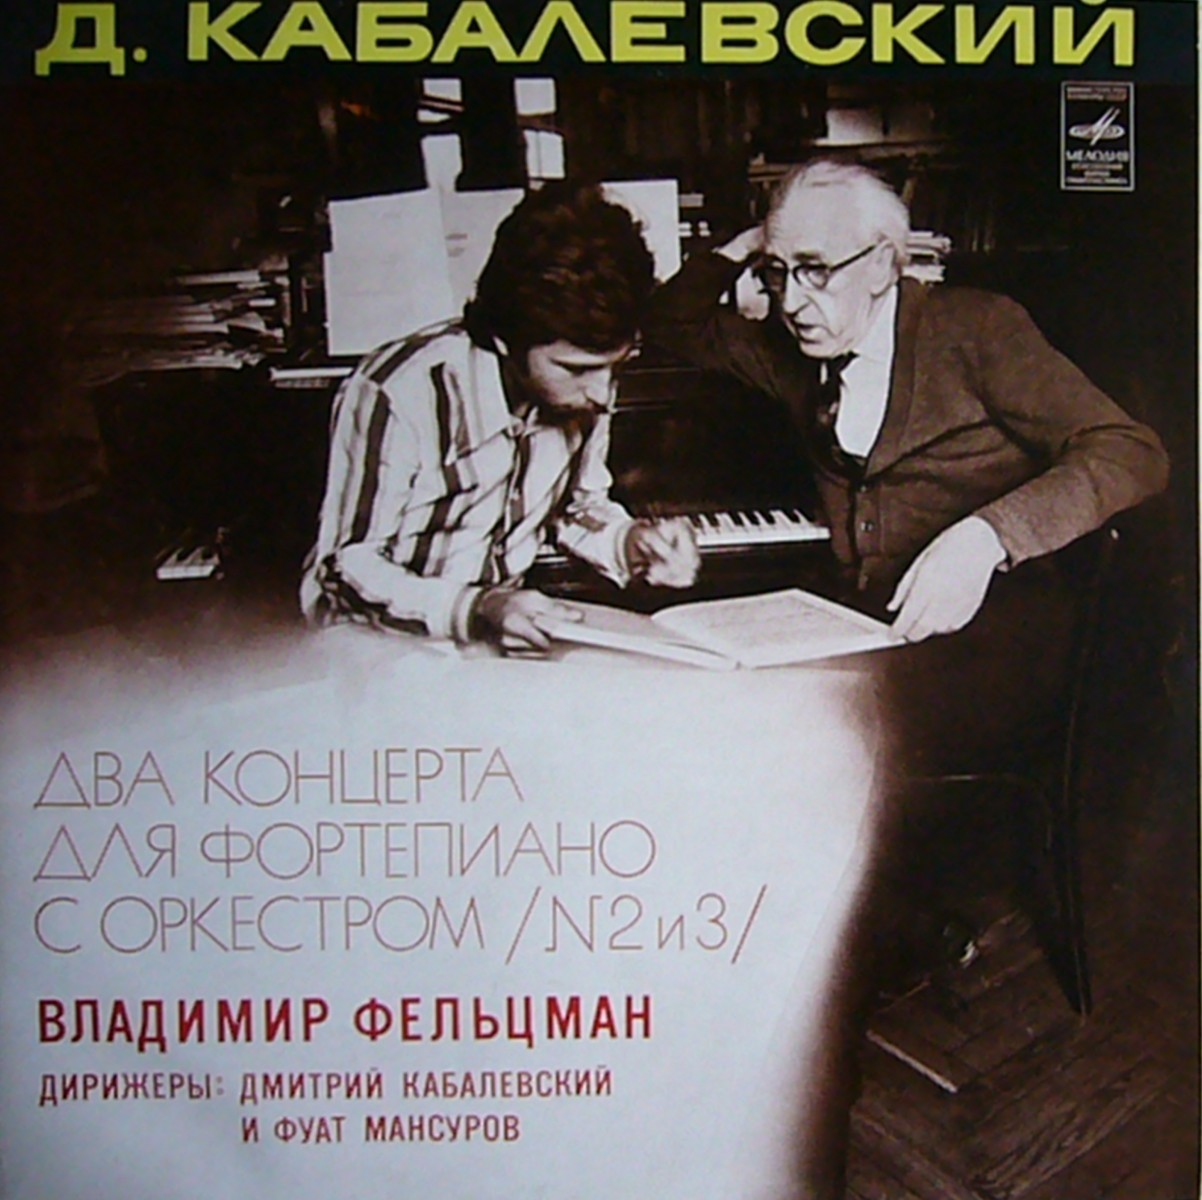 Д. КАБАЛЕВСКИЙ (1904). Владимир ФЕЛЬЦМАН (ф-но)